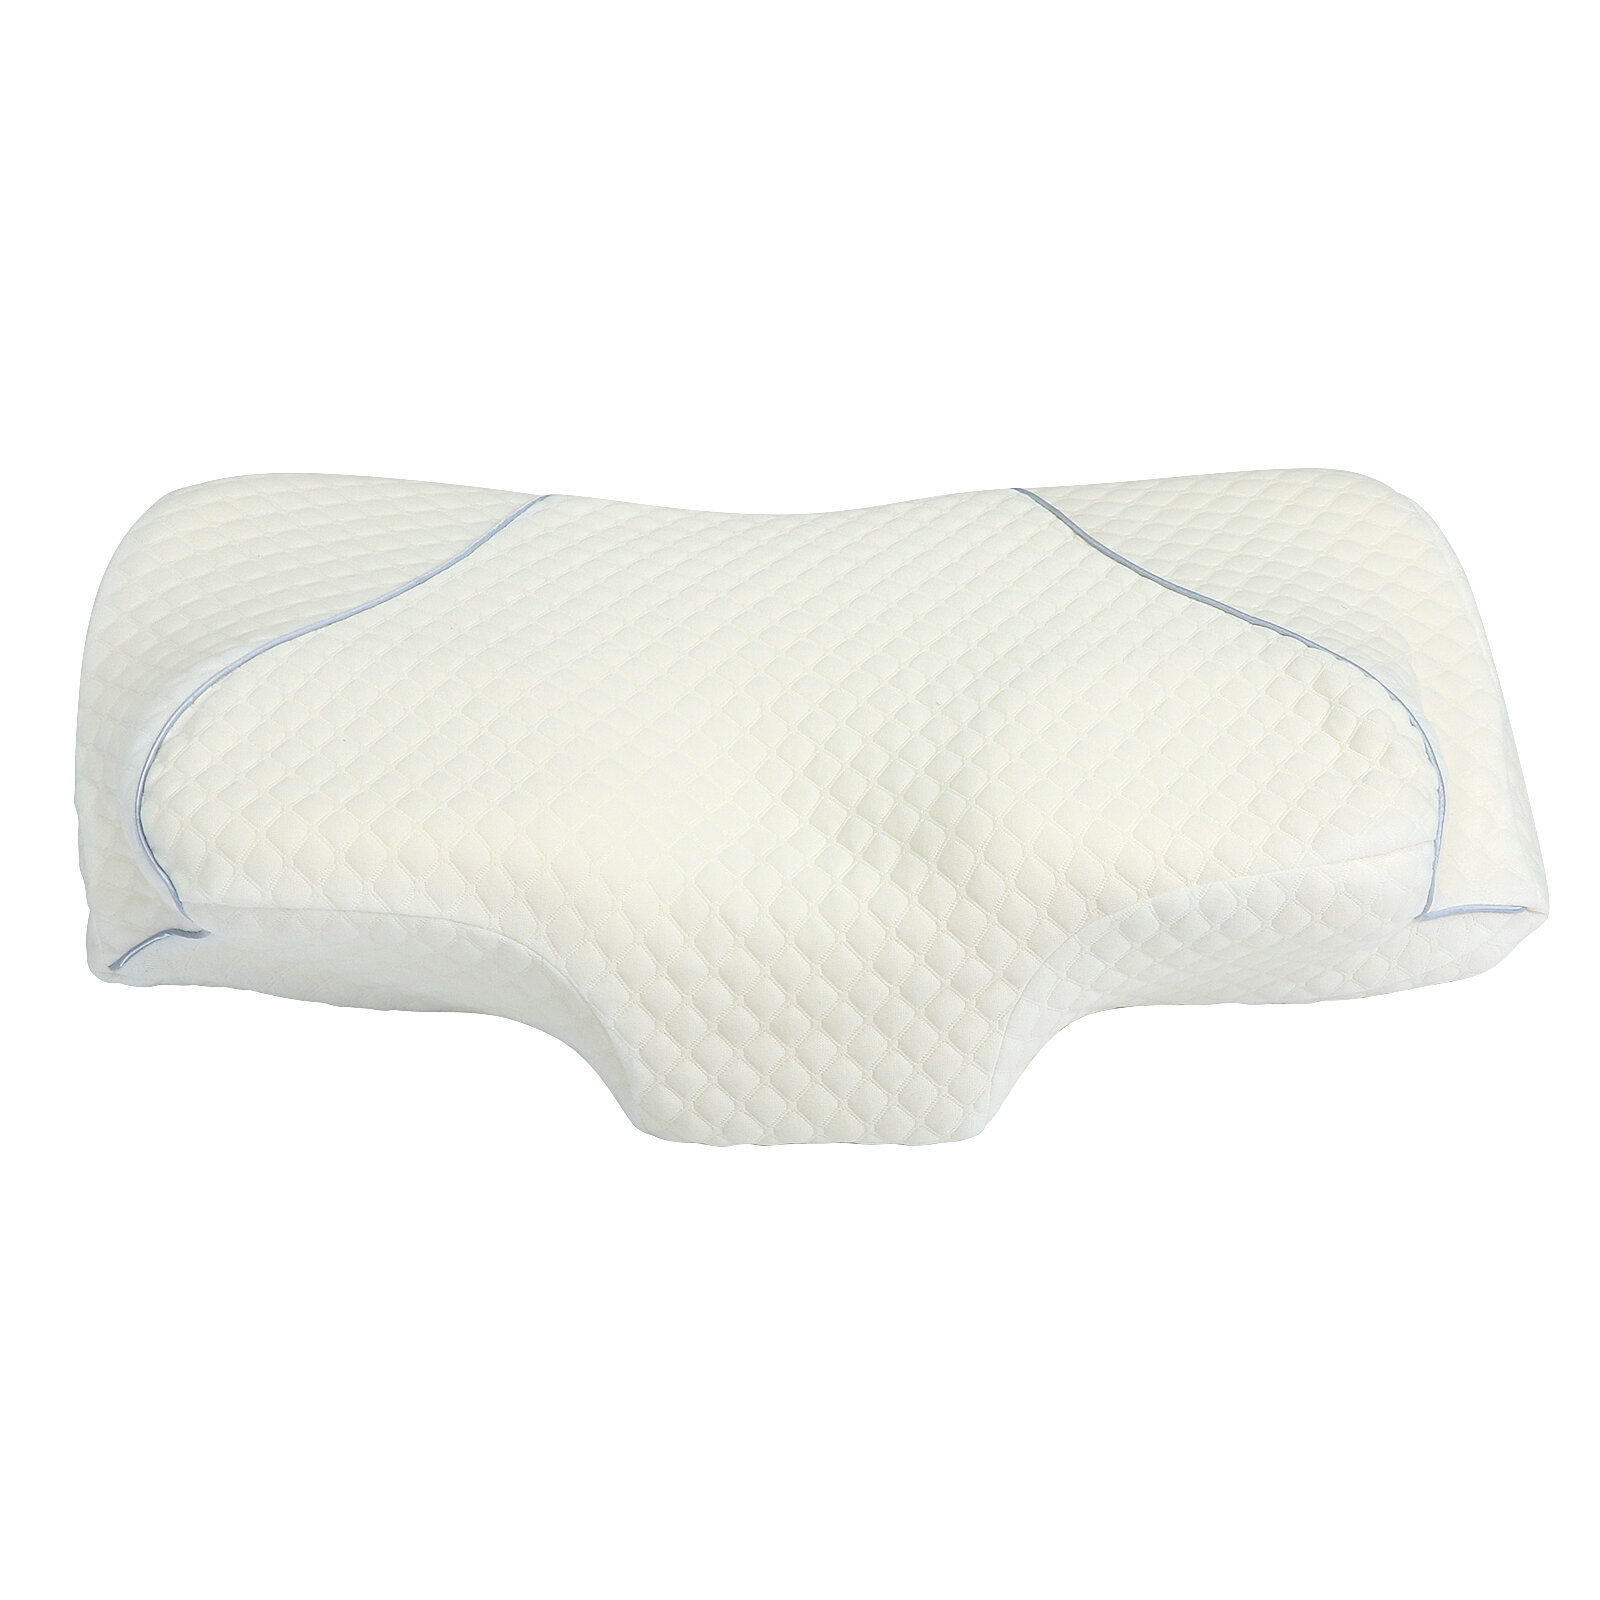 Στα 23.04 € από αποθήκη Κίνας | ESSORT Cervical Memory Pillow Foam Contour Pillow Neck Pain Ergonomic Breathable Sleeping Adjustable